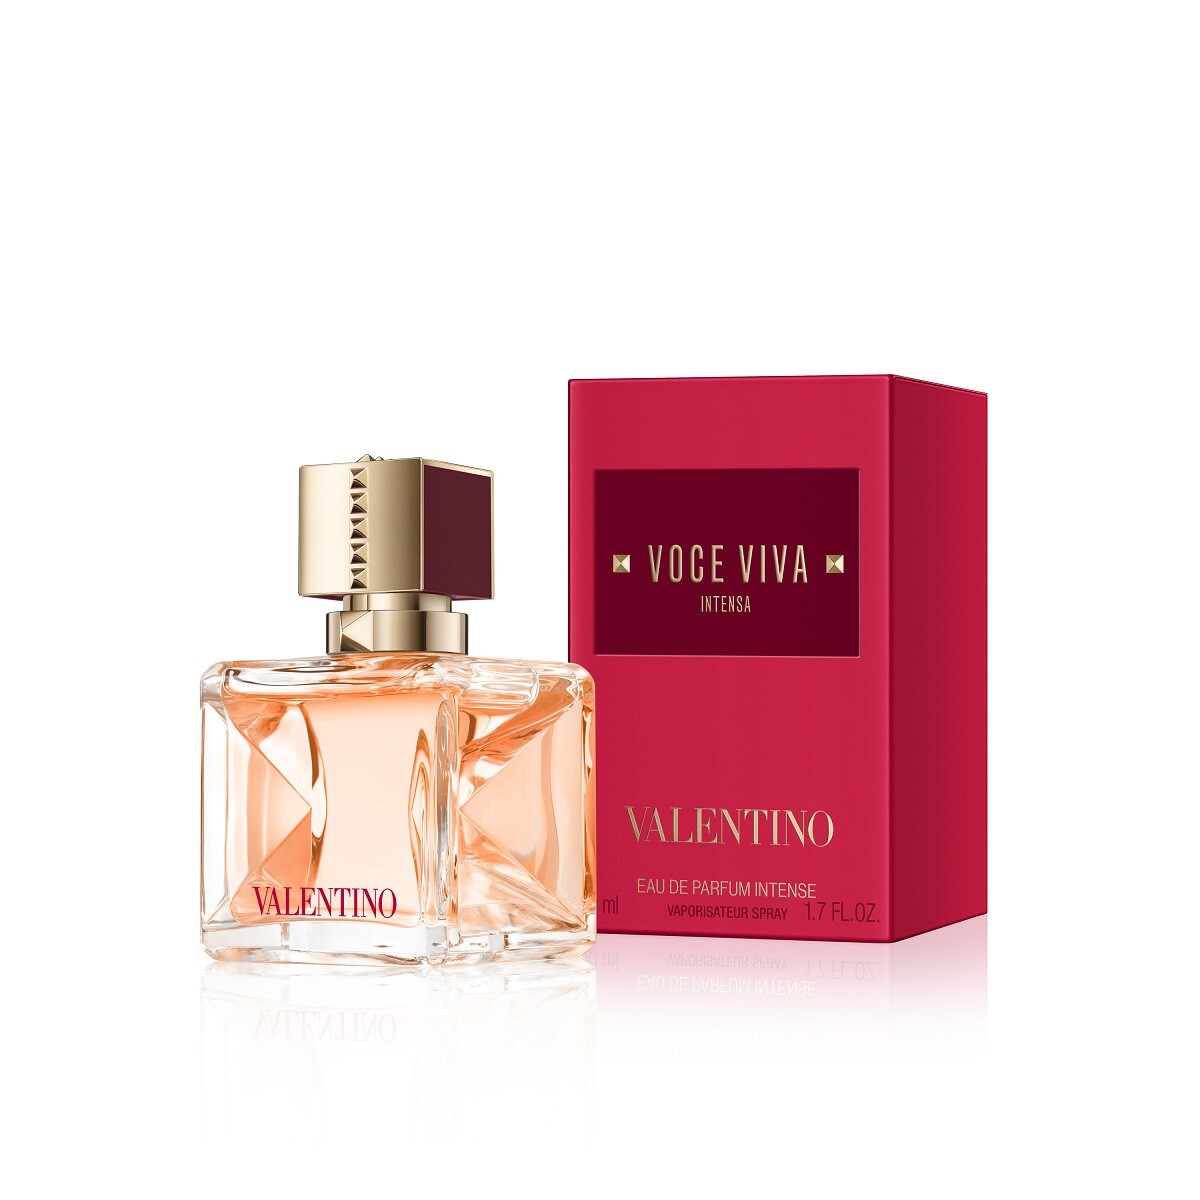 Perfume Valentino Voce Viva Intense Edp 50 Ml. 